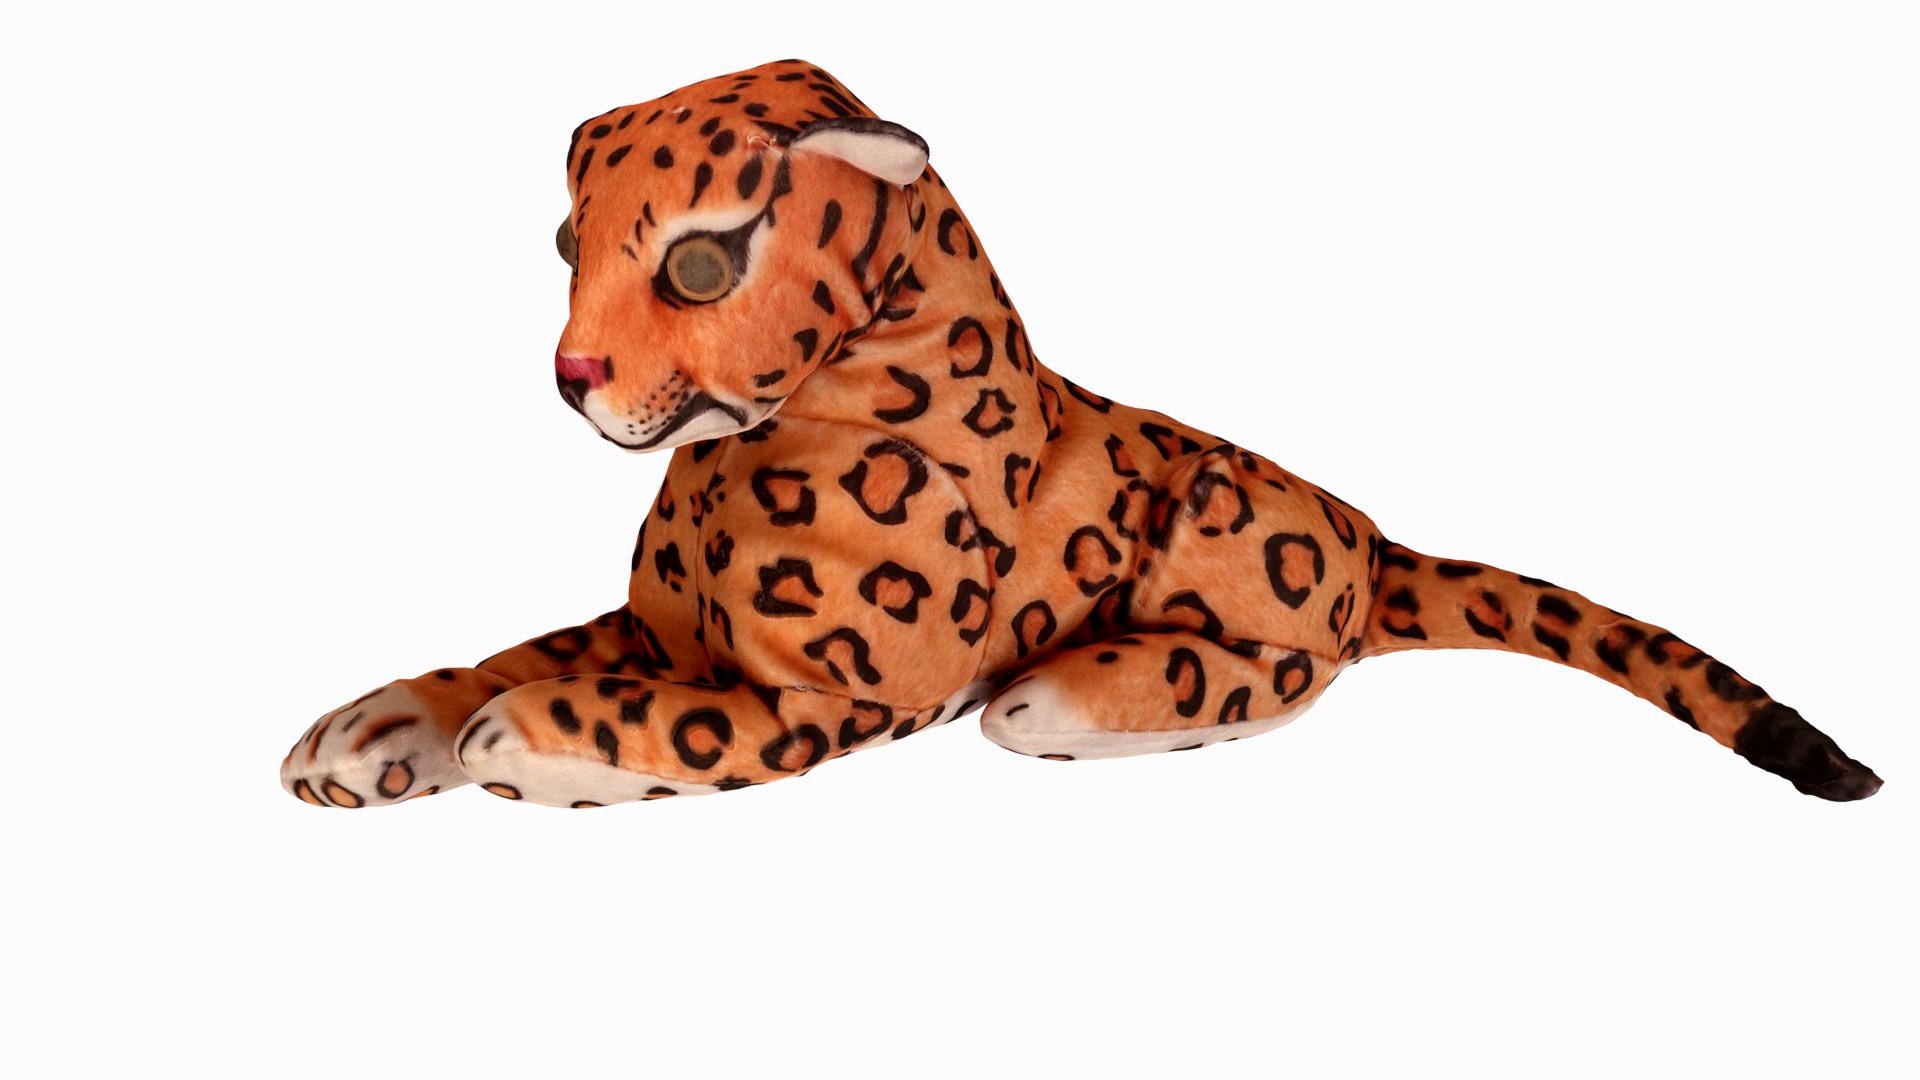 Jaguar toy